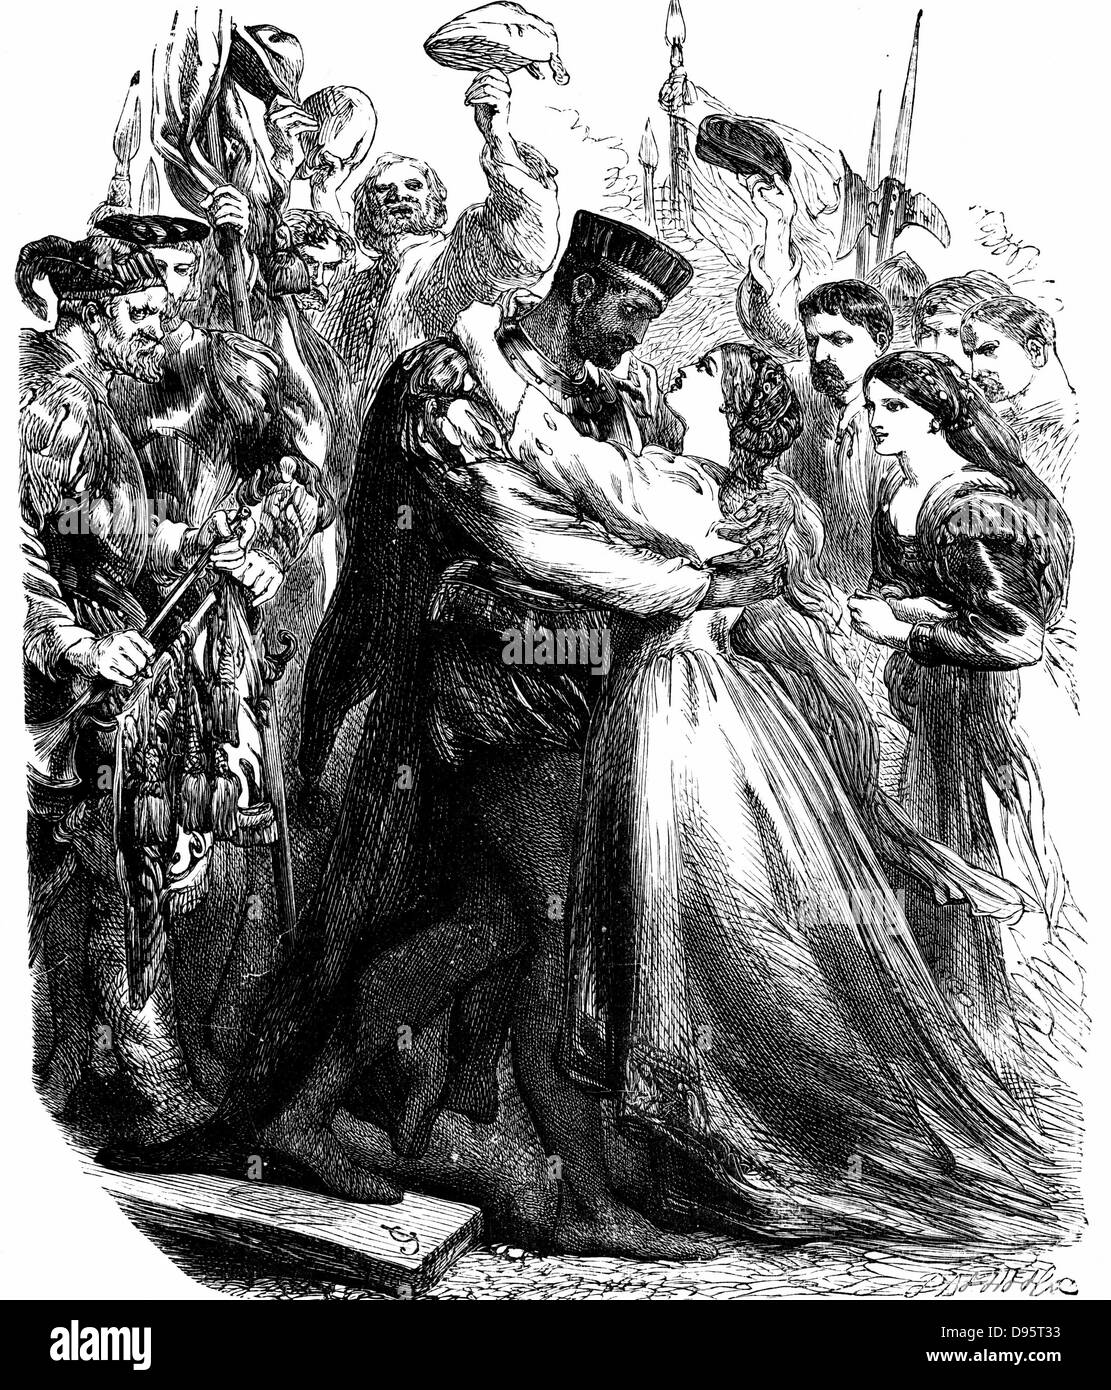 Shakespeares "Othello" 2. Akt: Othello Desdemona Zypern begrüßen. 19. Jahrhundert-Gravur. Stockfoto